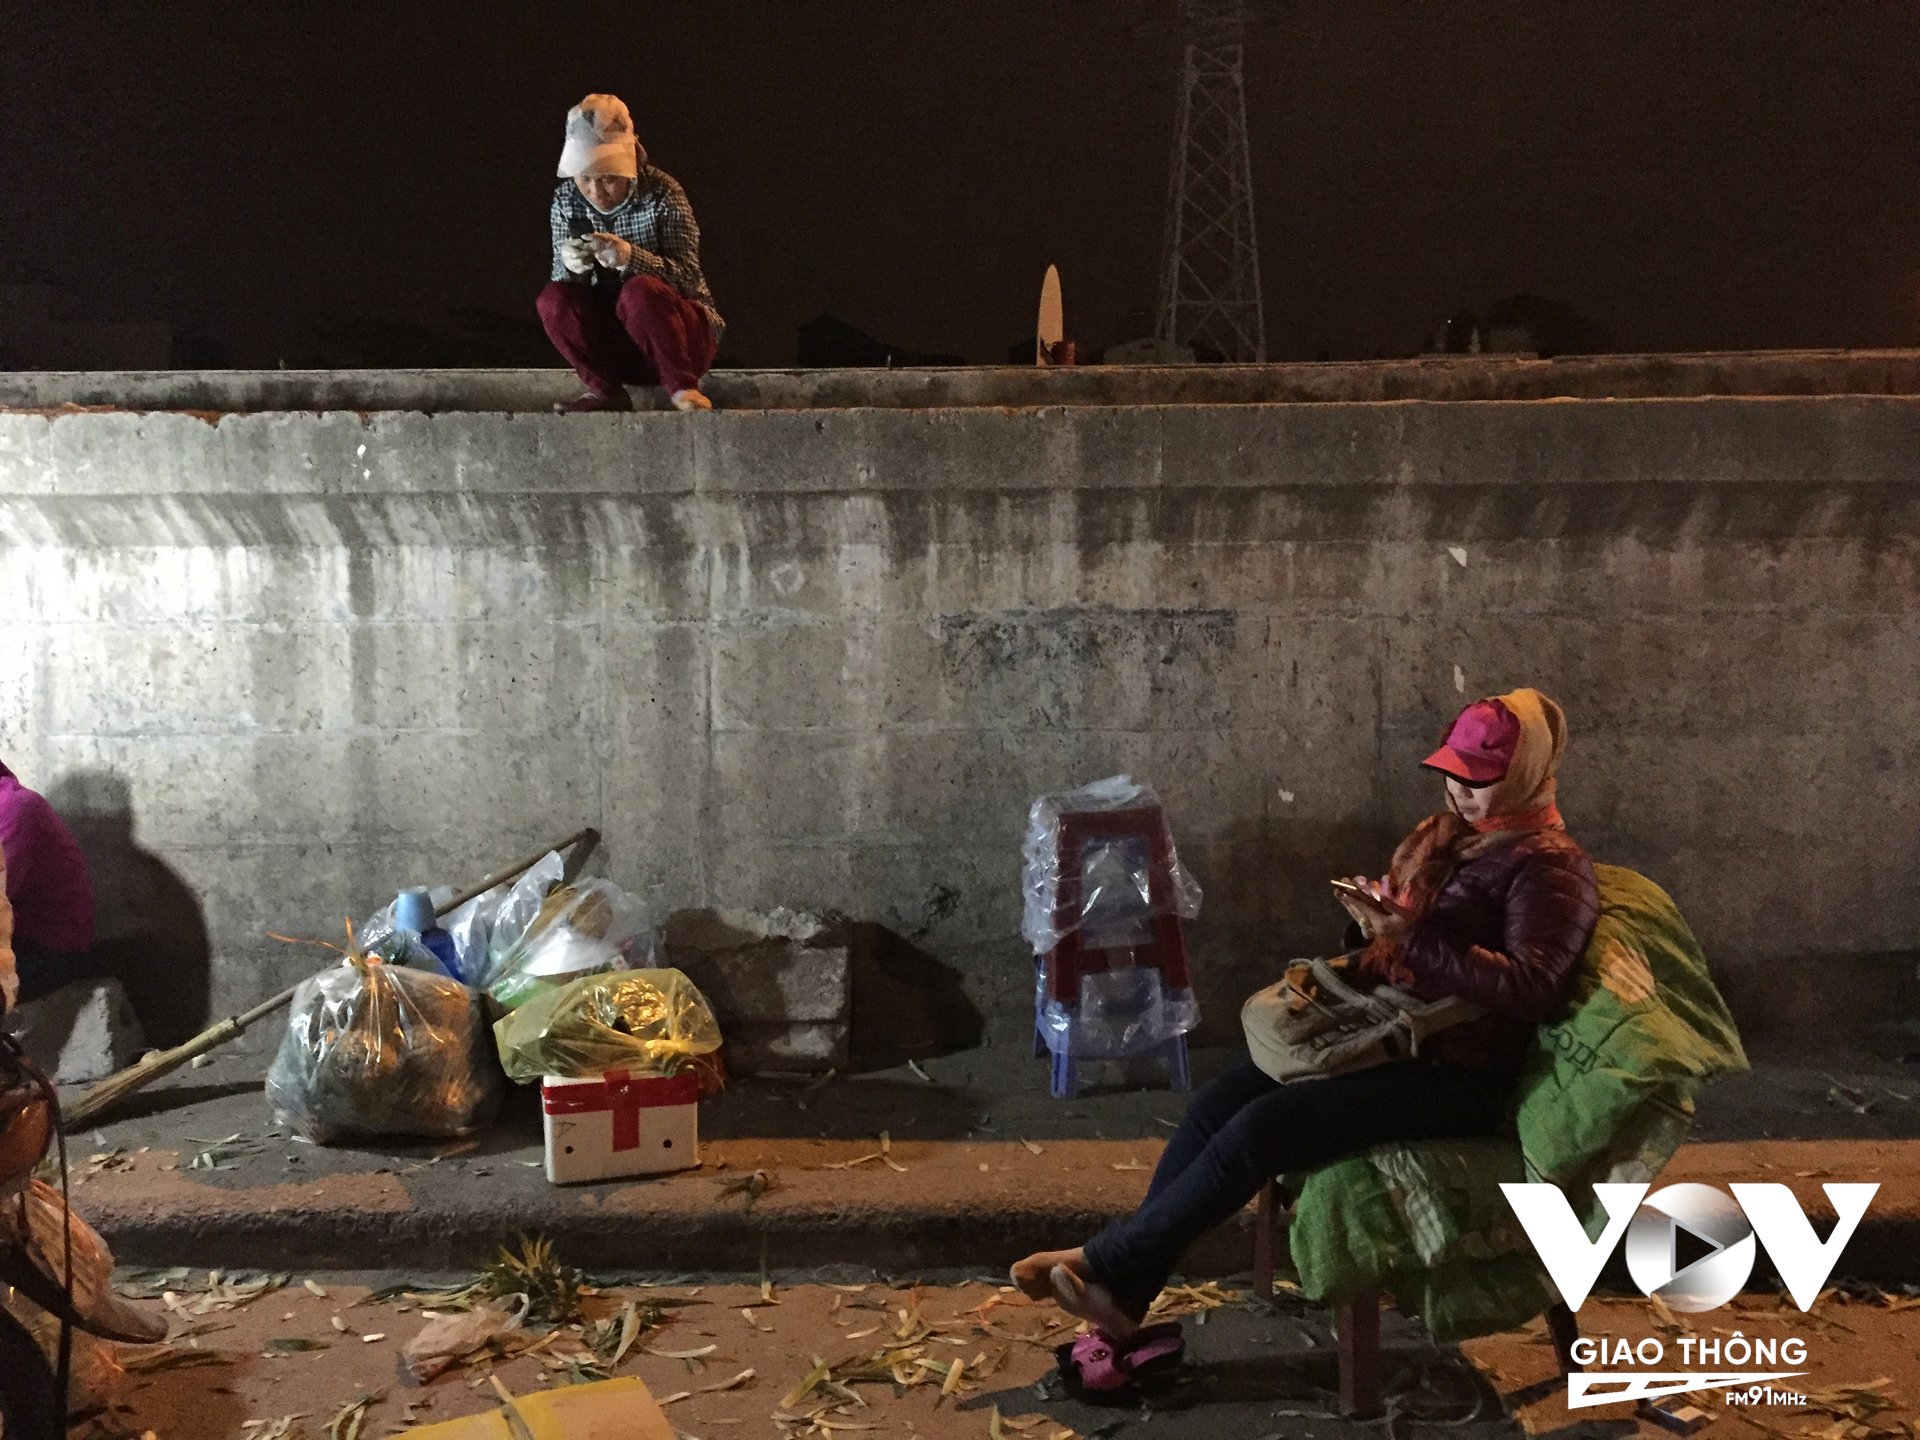 Phút nghỉ ngơi khi trời gần sáng của những người phụ nữ buôn bán ở chợ Long Biên